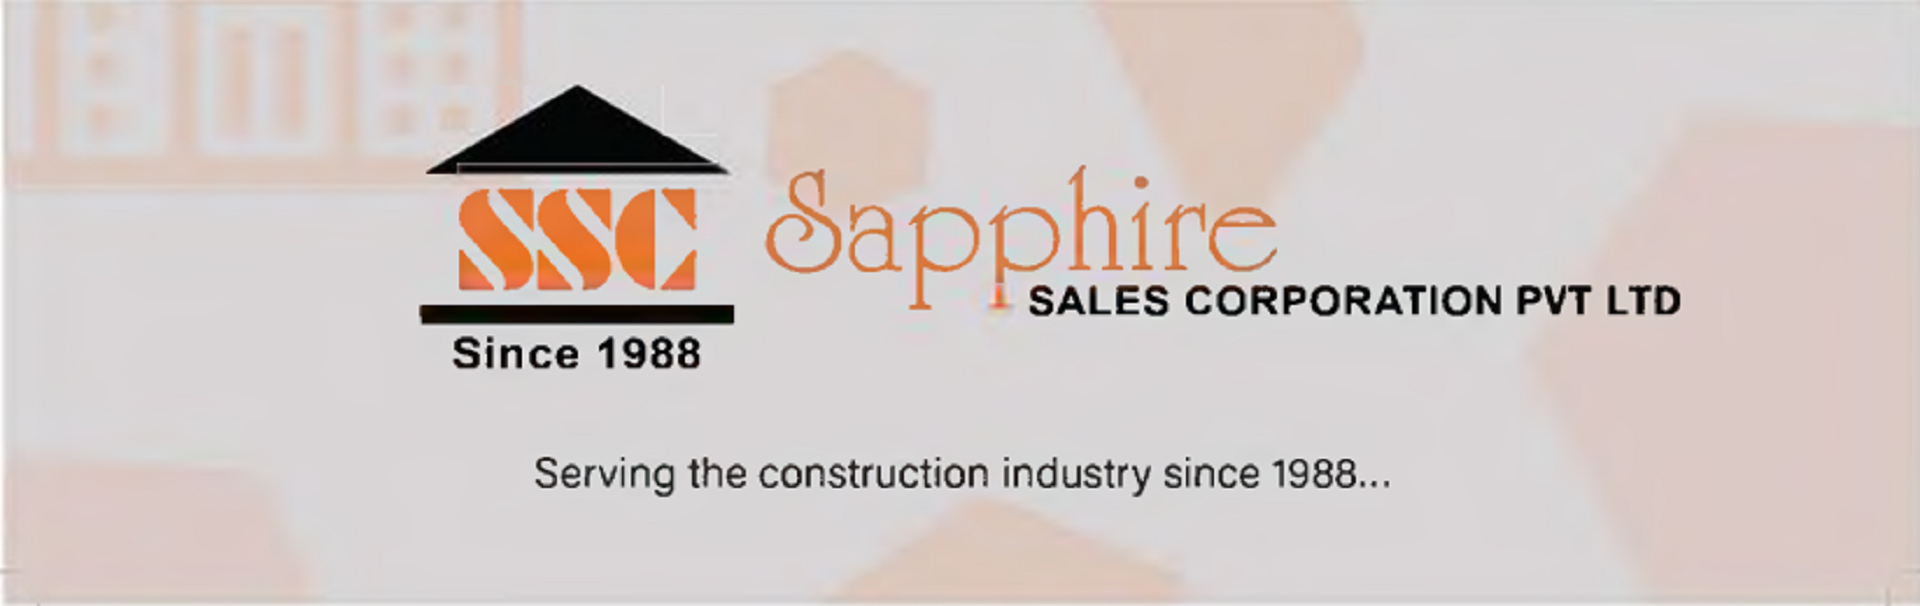 Sapphire Sales Corporation Pvt Ltd,Pune